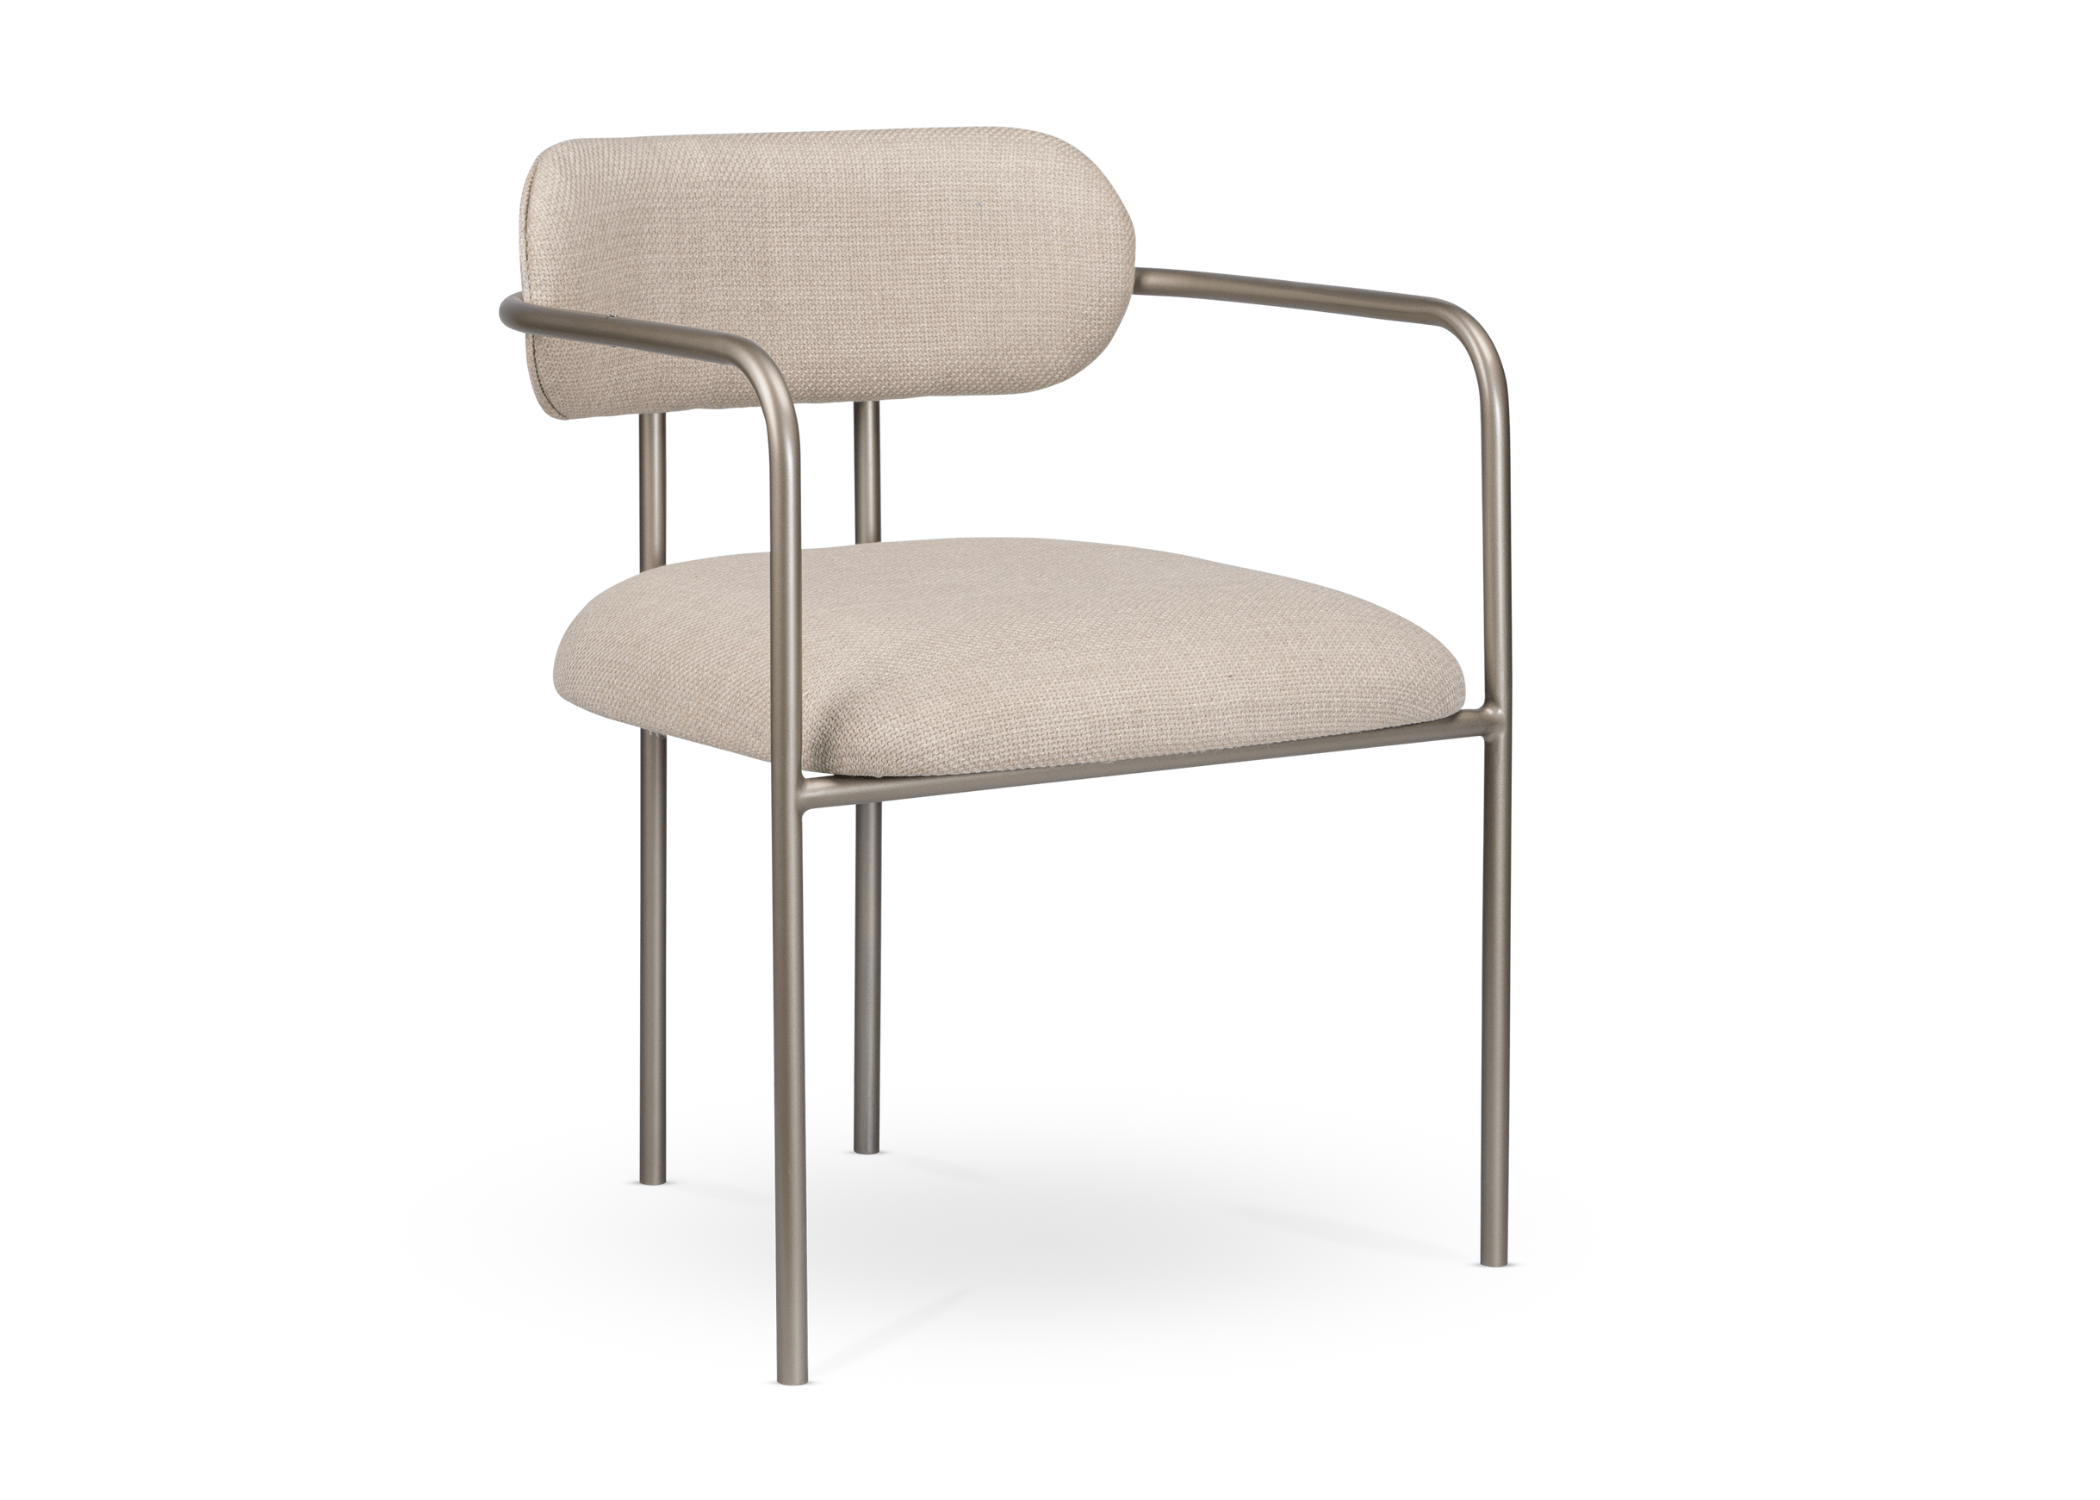 Cadeira Chipre vista de frente, com sua estrutura elegante em metal.